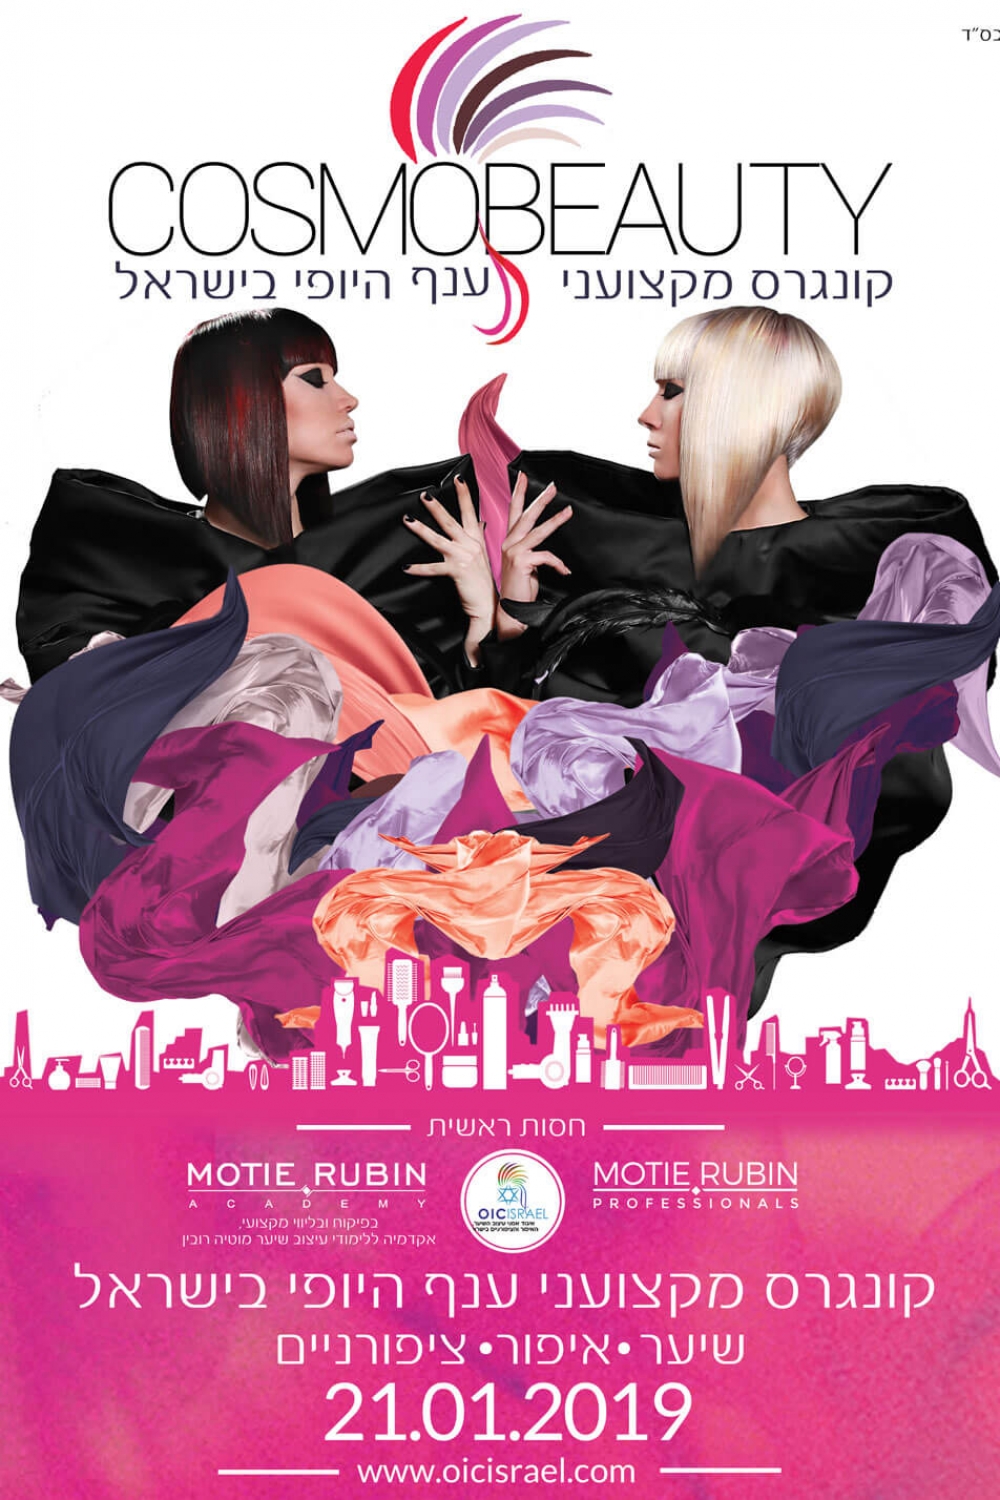 קוסמוביוטי 2019 קונגרס מעצבי שיער, אמני איפור וציפורניים בישראל